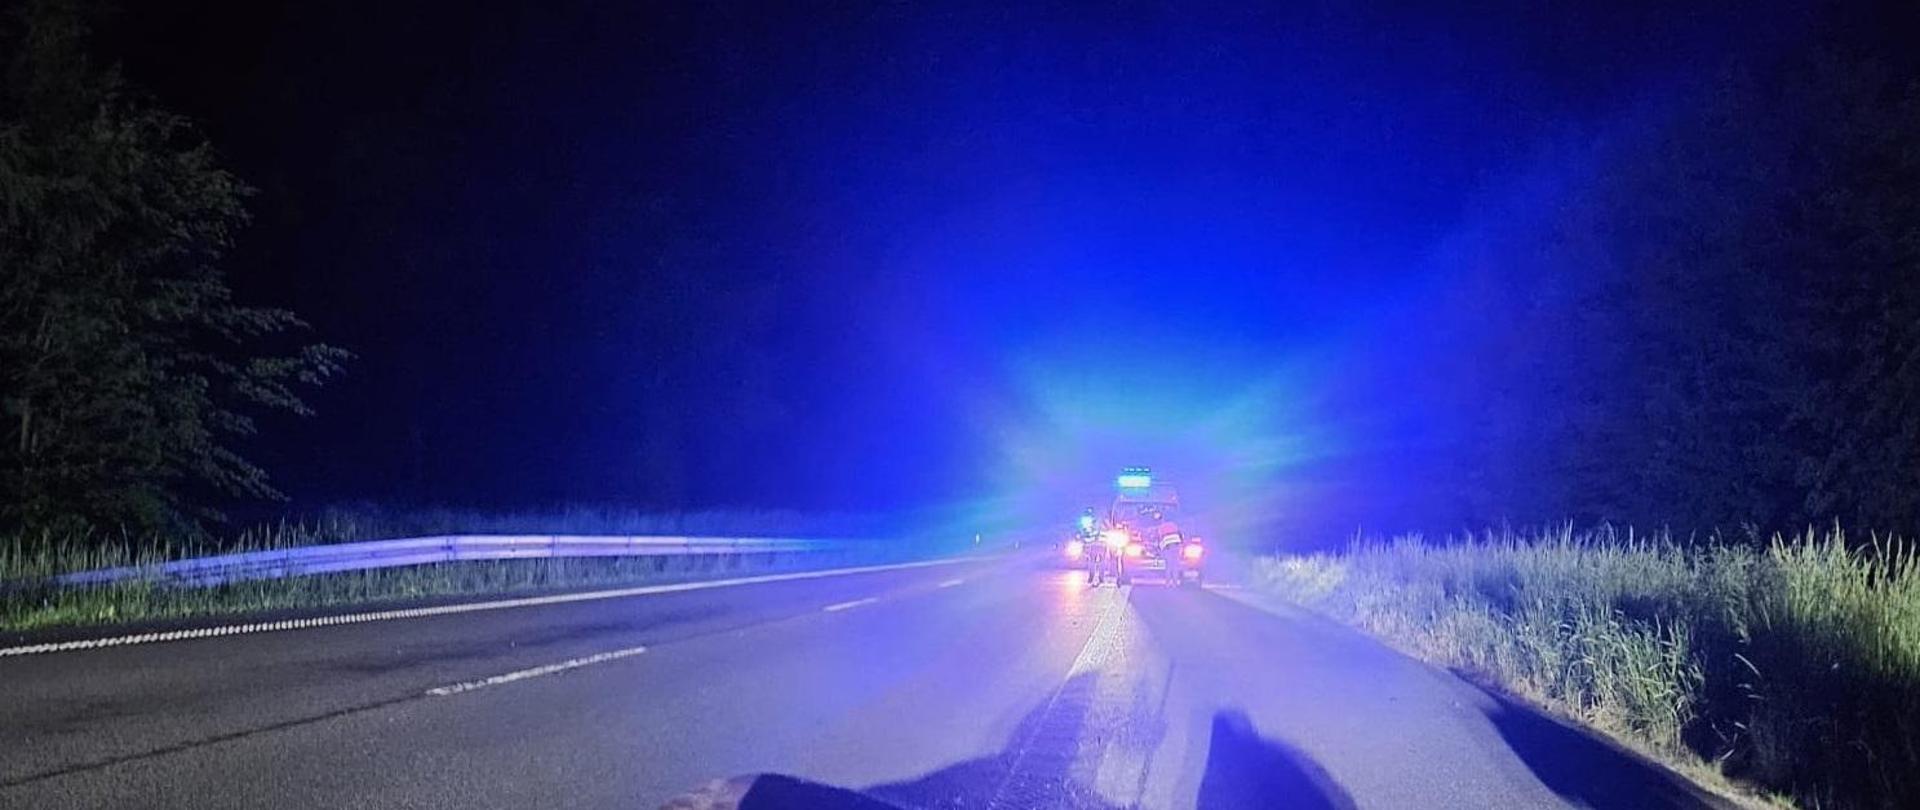 Zdjęcie zrobione nocą. Na drodze leży zwierzę. W oddali niebieskie światła ostrzegawcze służb ratowniczych.